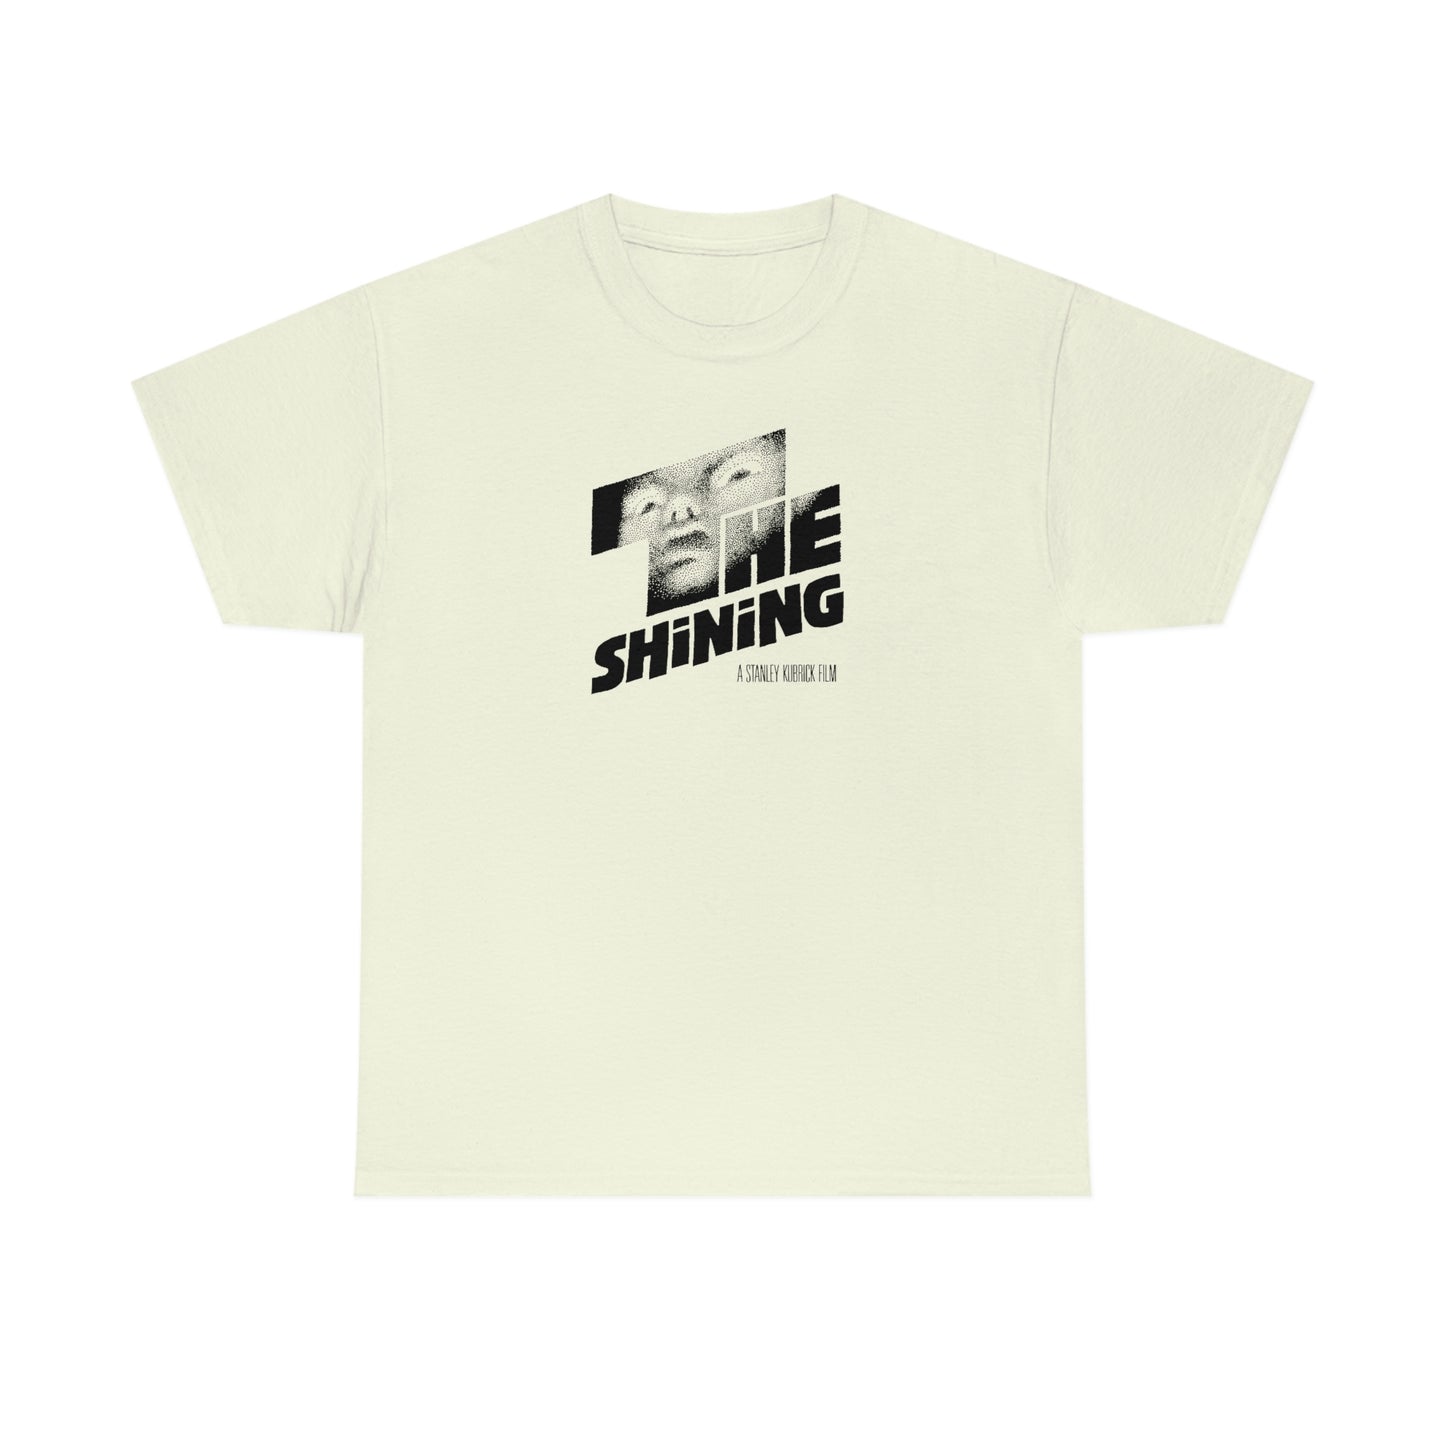 The Shining T-Shirt